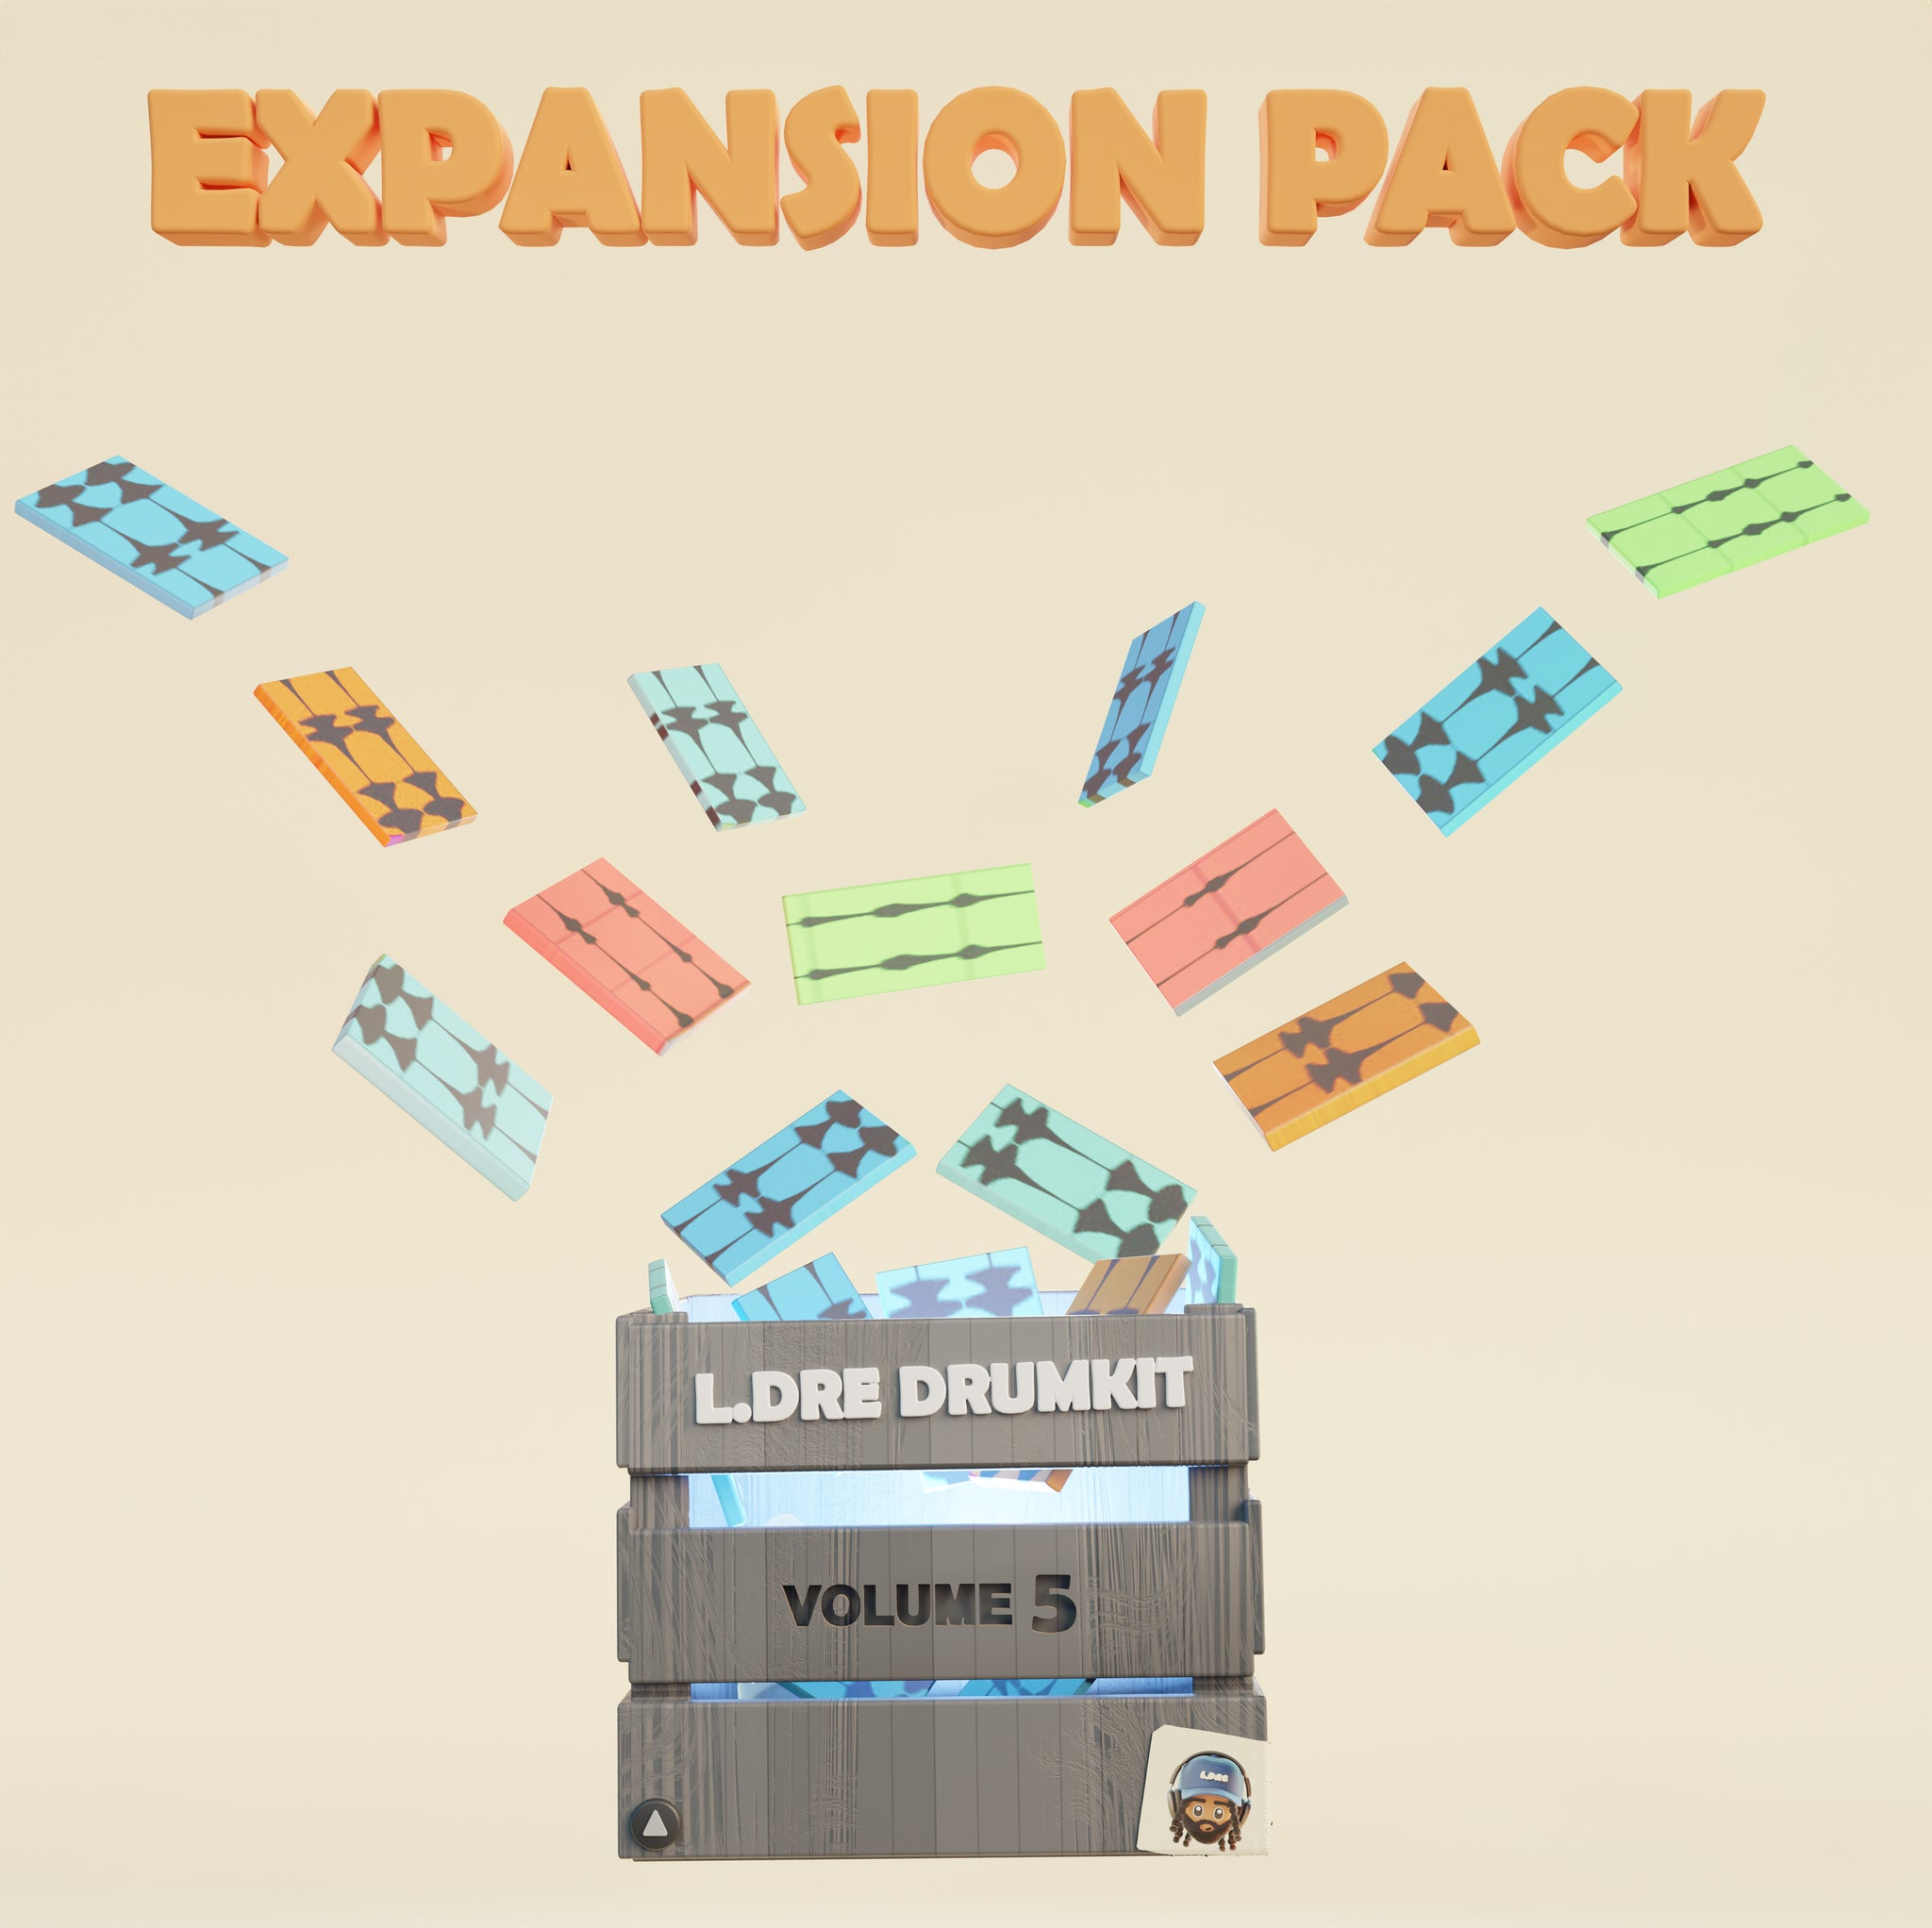 L.Dre Drum Kit Vol. 5 - Expansion Pack - Prod. By L.Dre